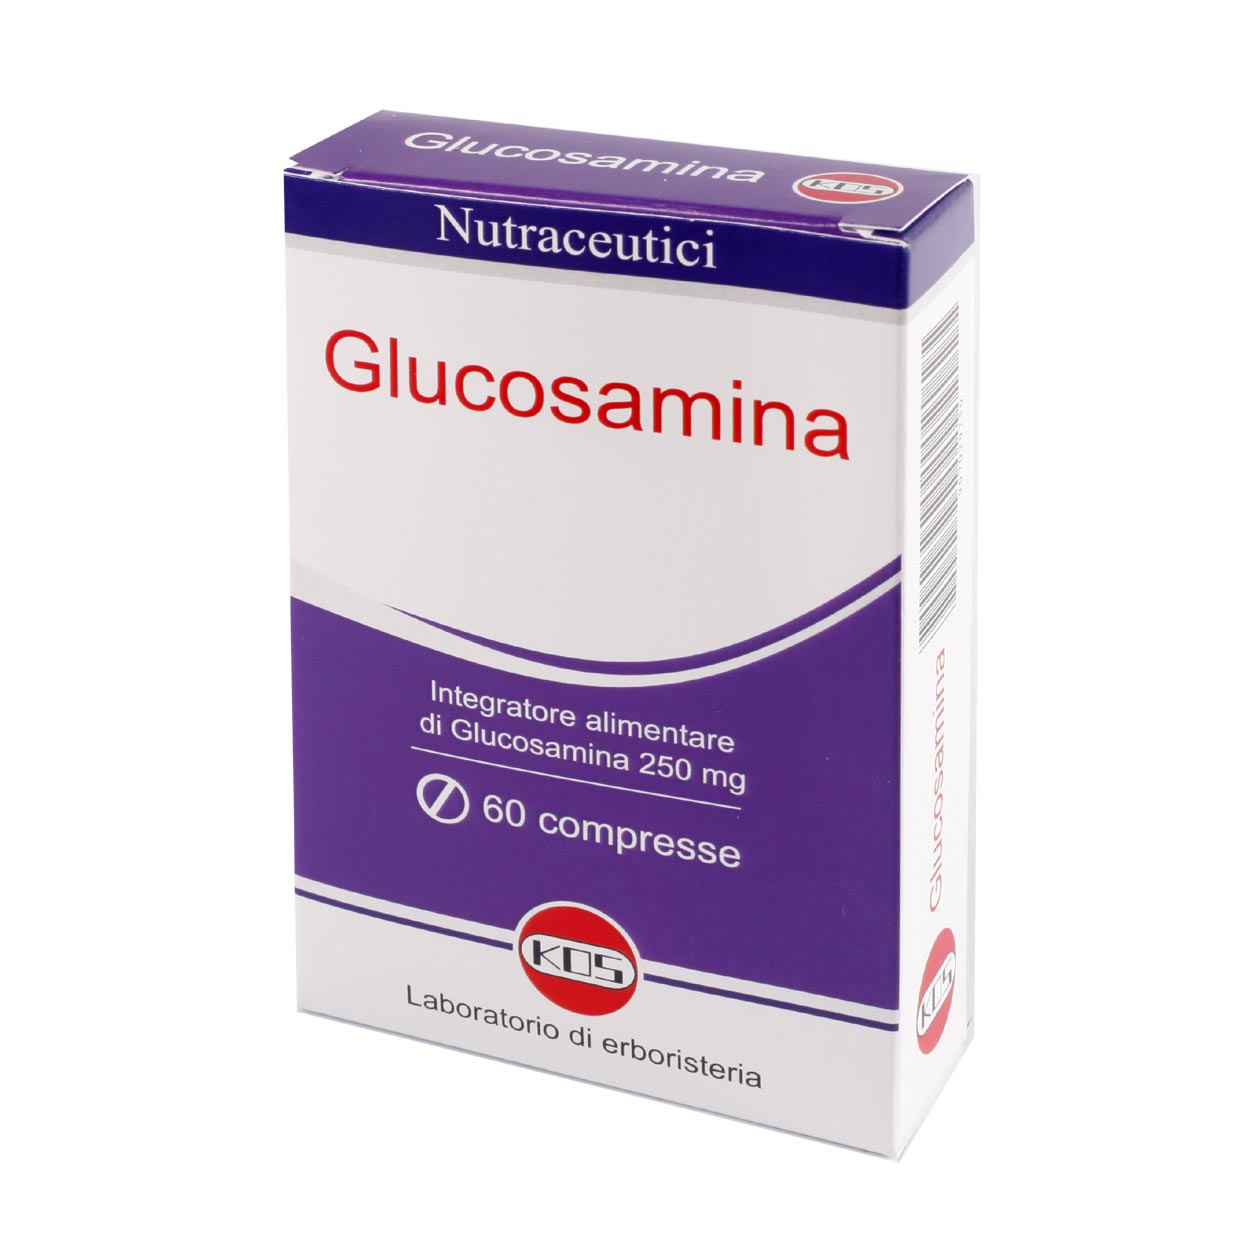 Glucosamina 60 compresse